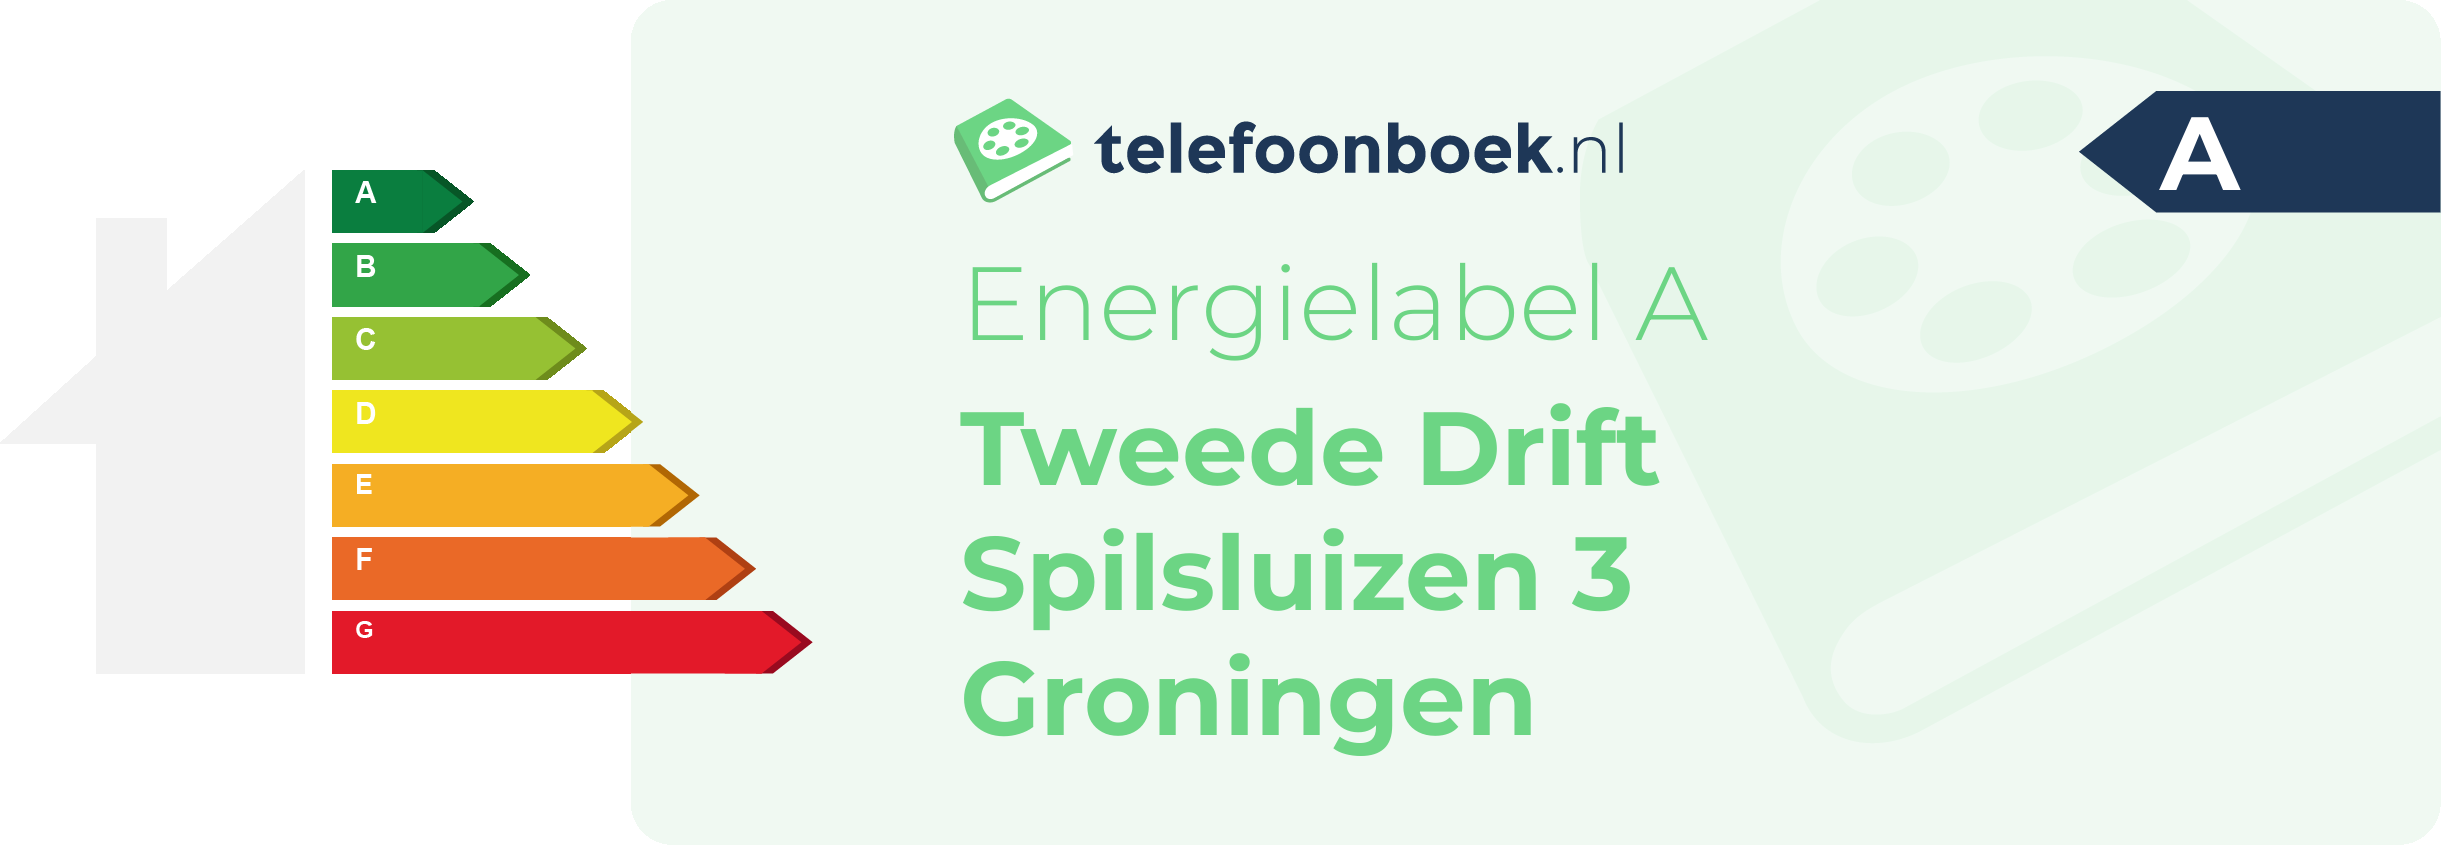 Energielabel Tweede Drift Spilsluizen 3 Groningen